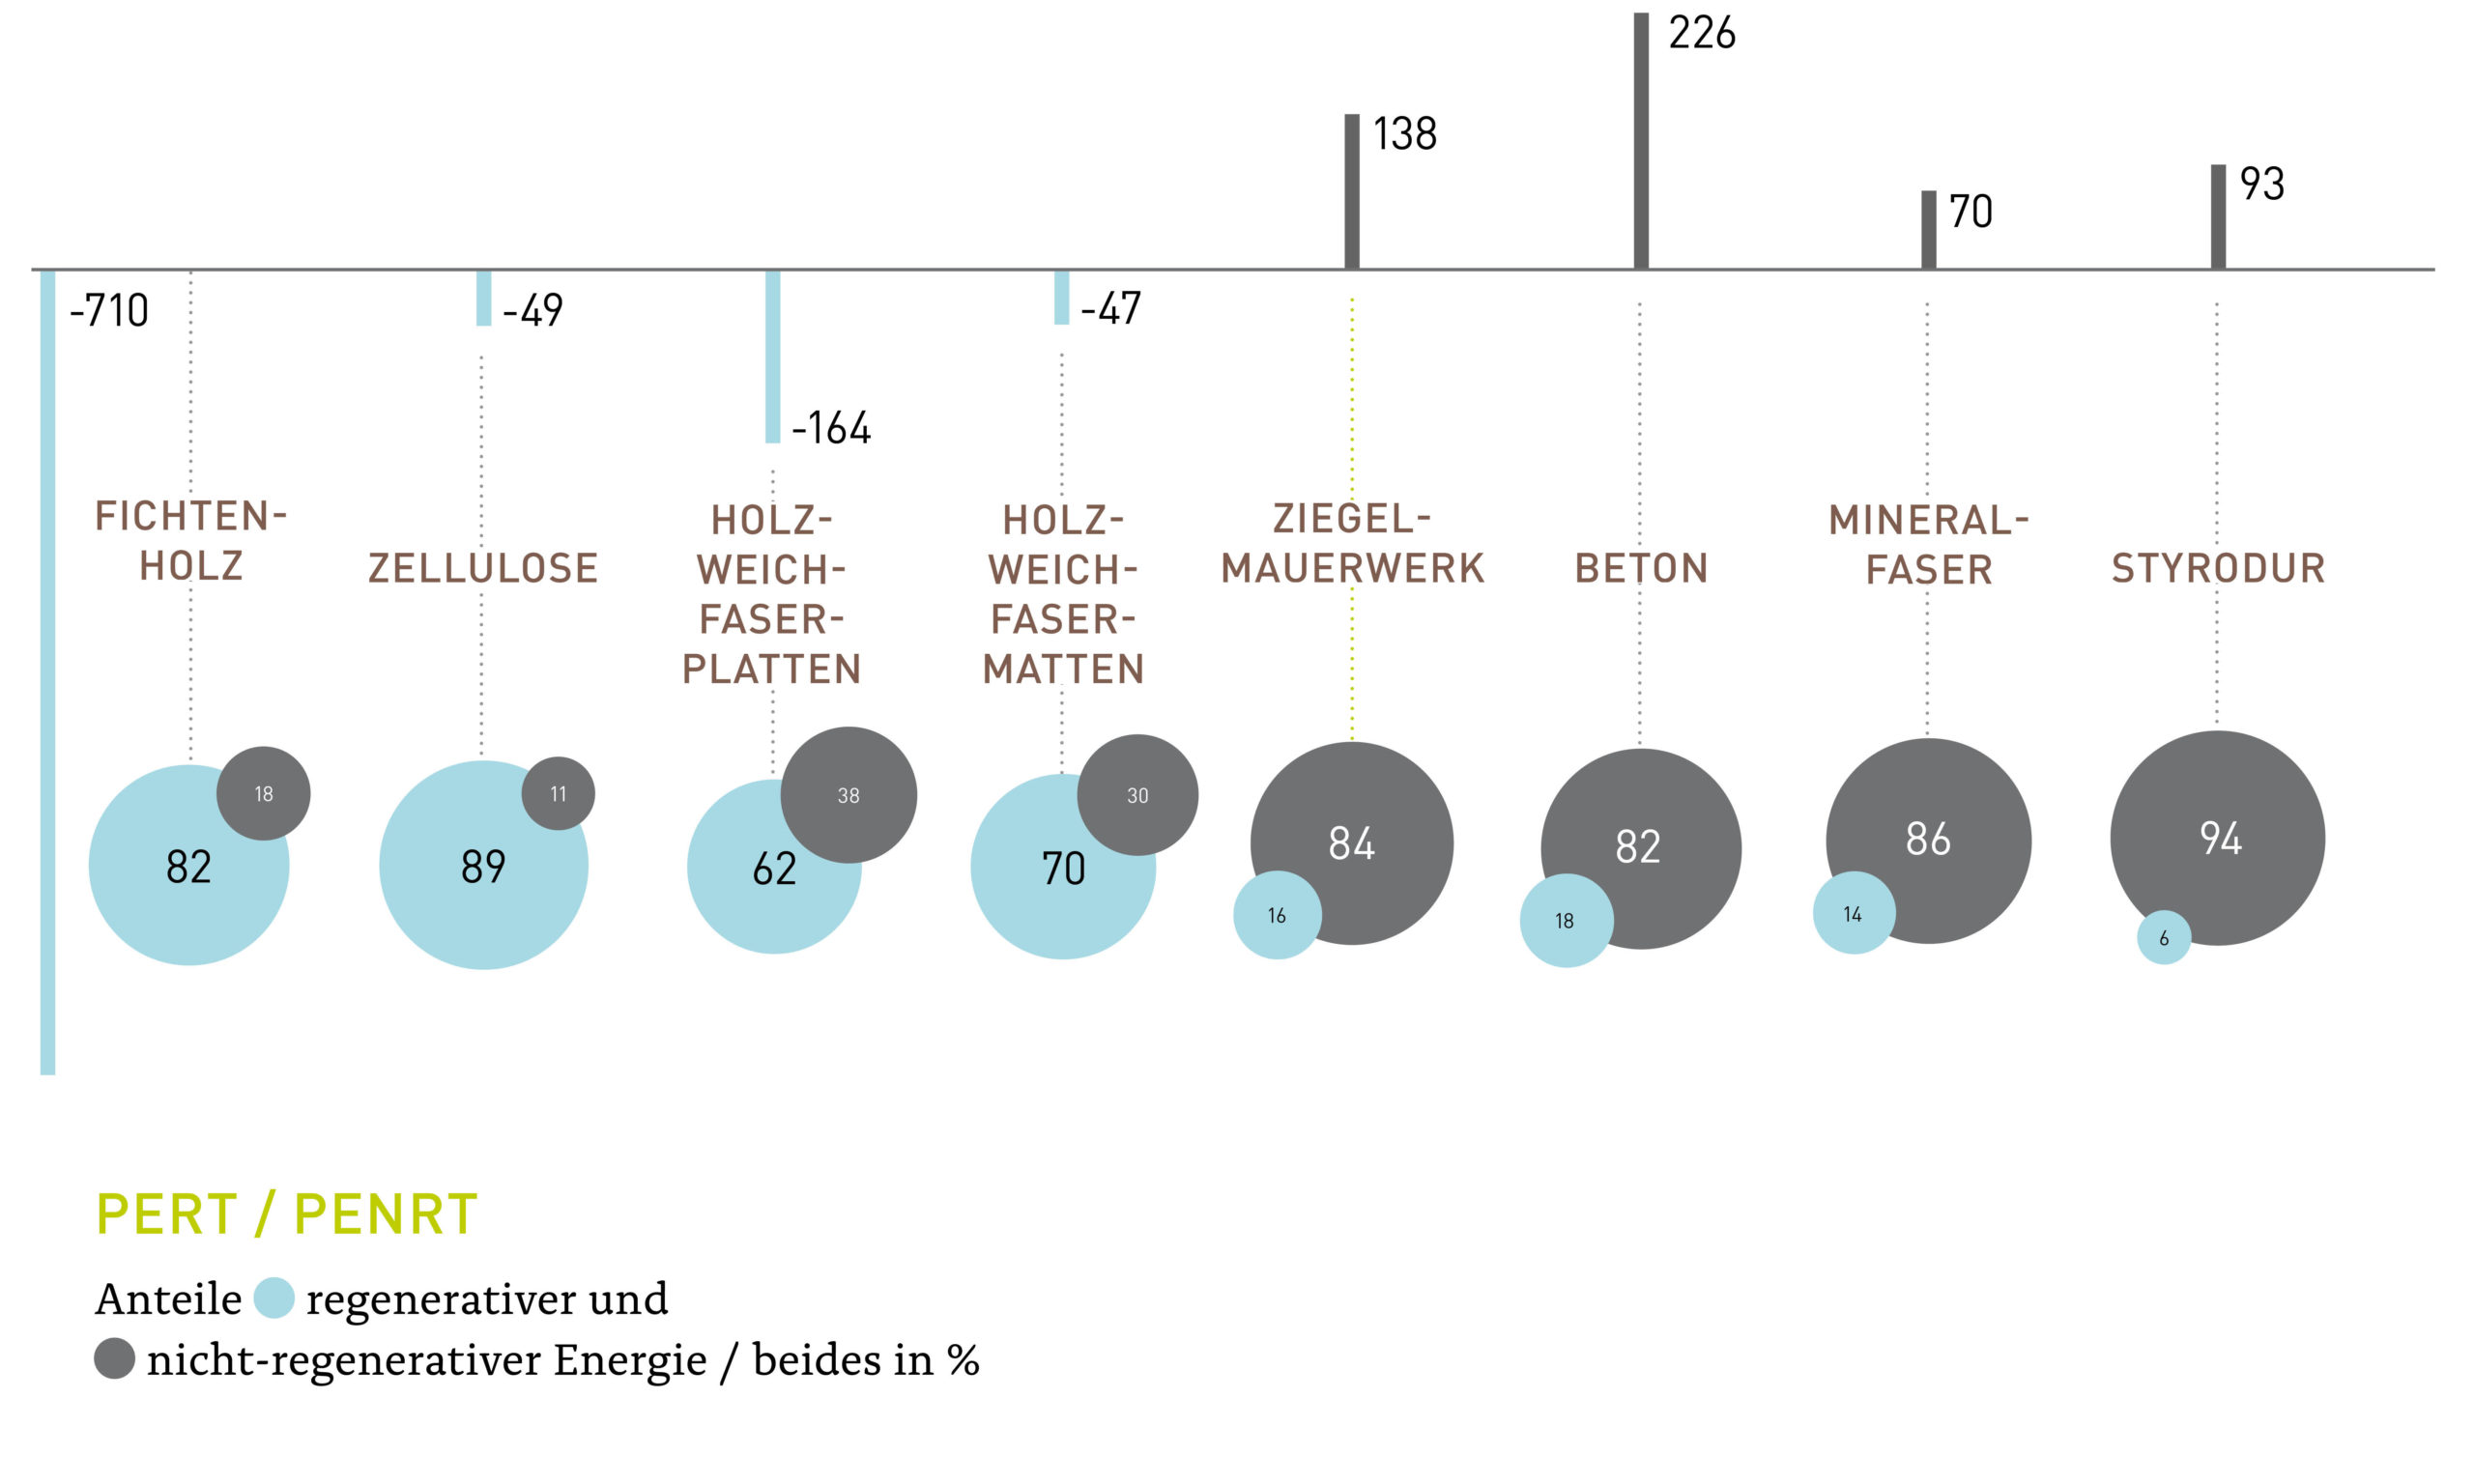 Grafik zu den Anteilen regenerativer und nicht-regenerativer Energie in verschiedenen Baustoffen